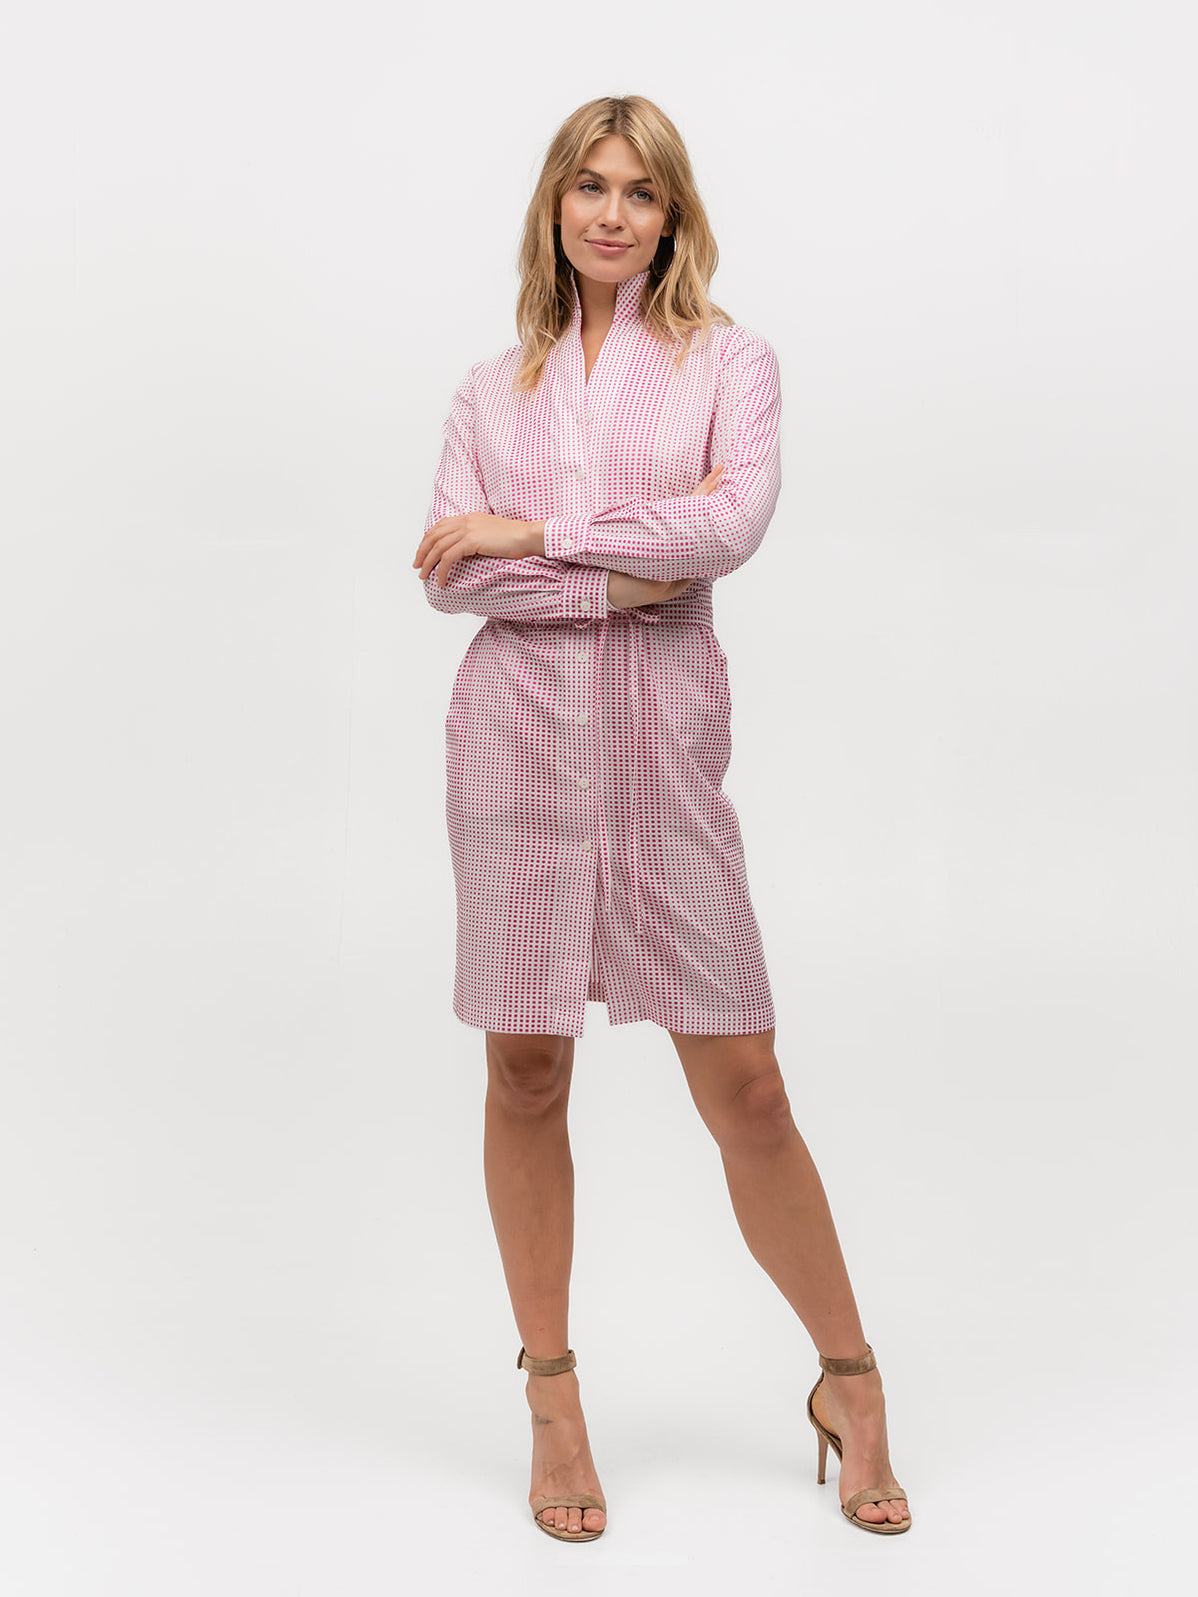 SHIRT DRESS: PARTY GIRL - Magenta Polka Dot Shirt Dress– Sarah Alexandra